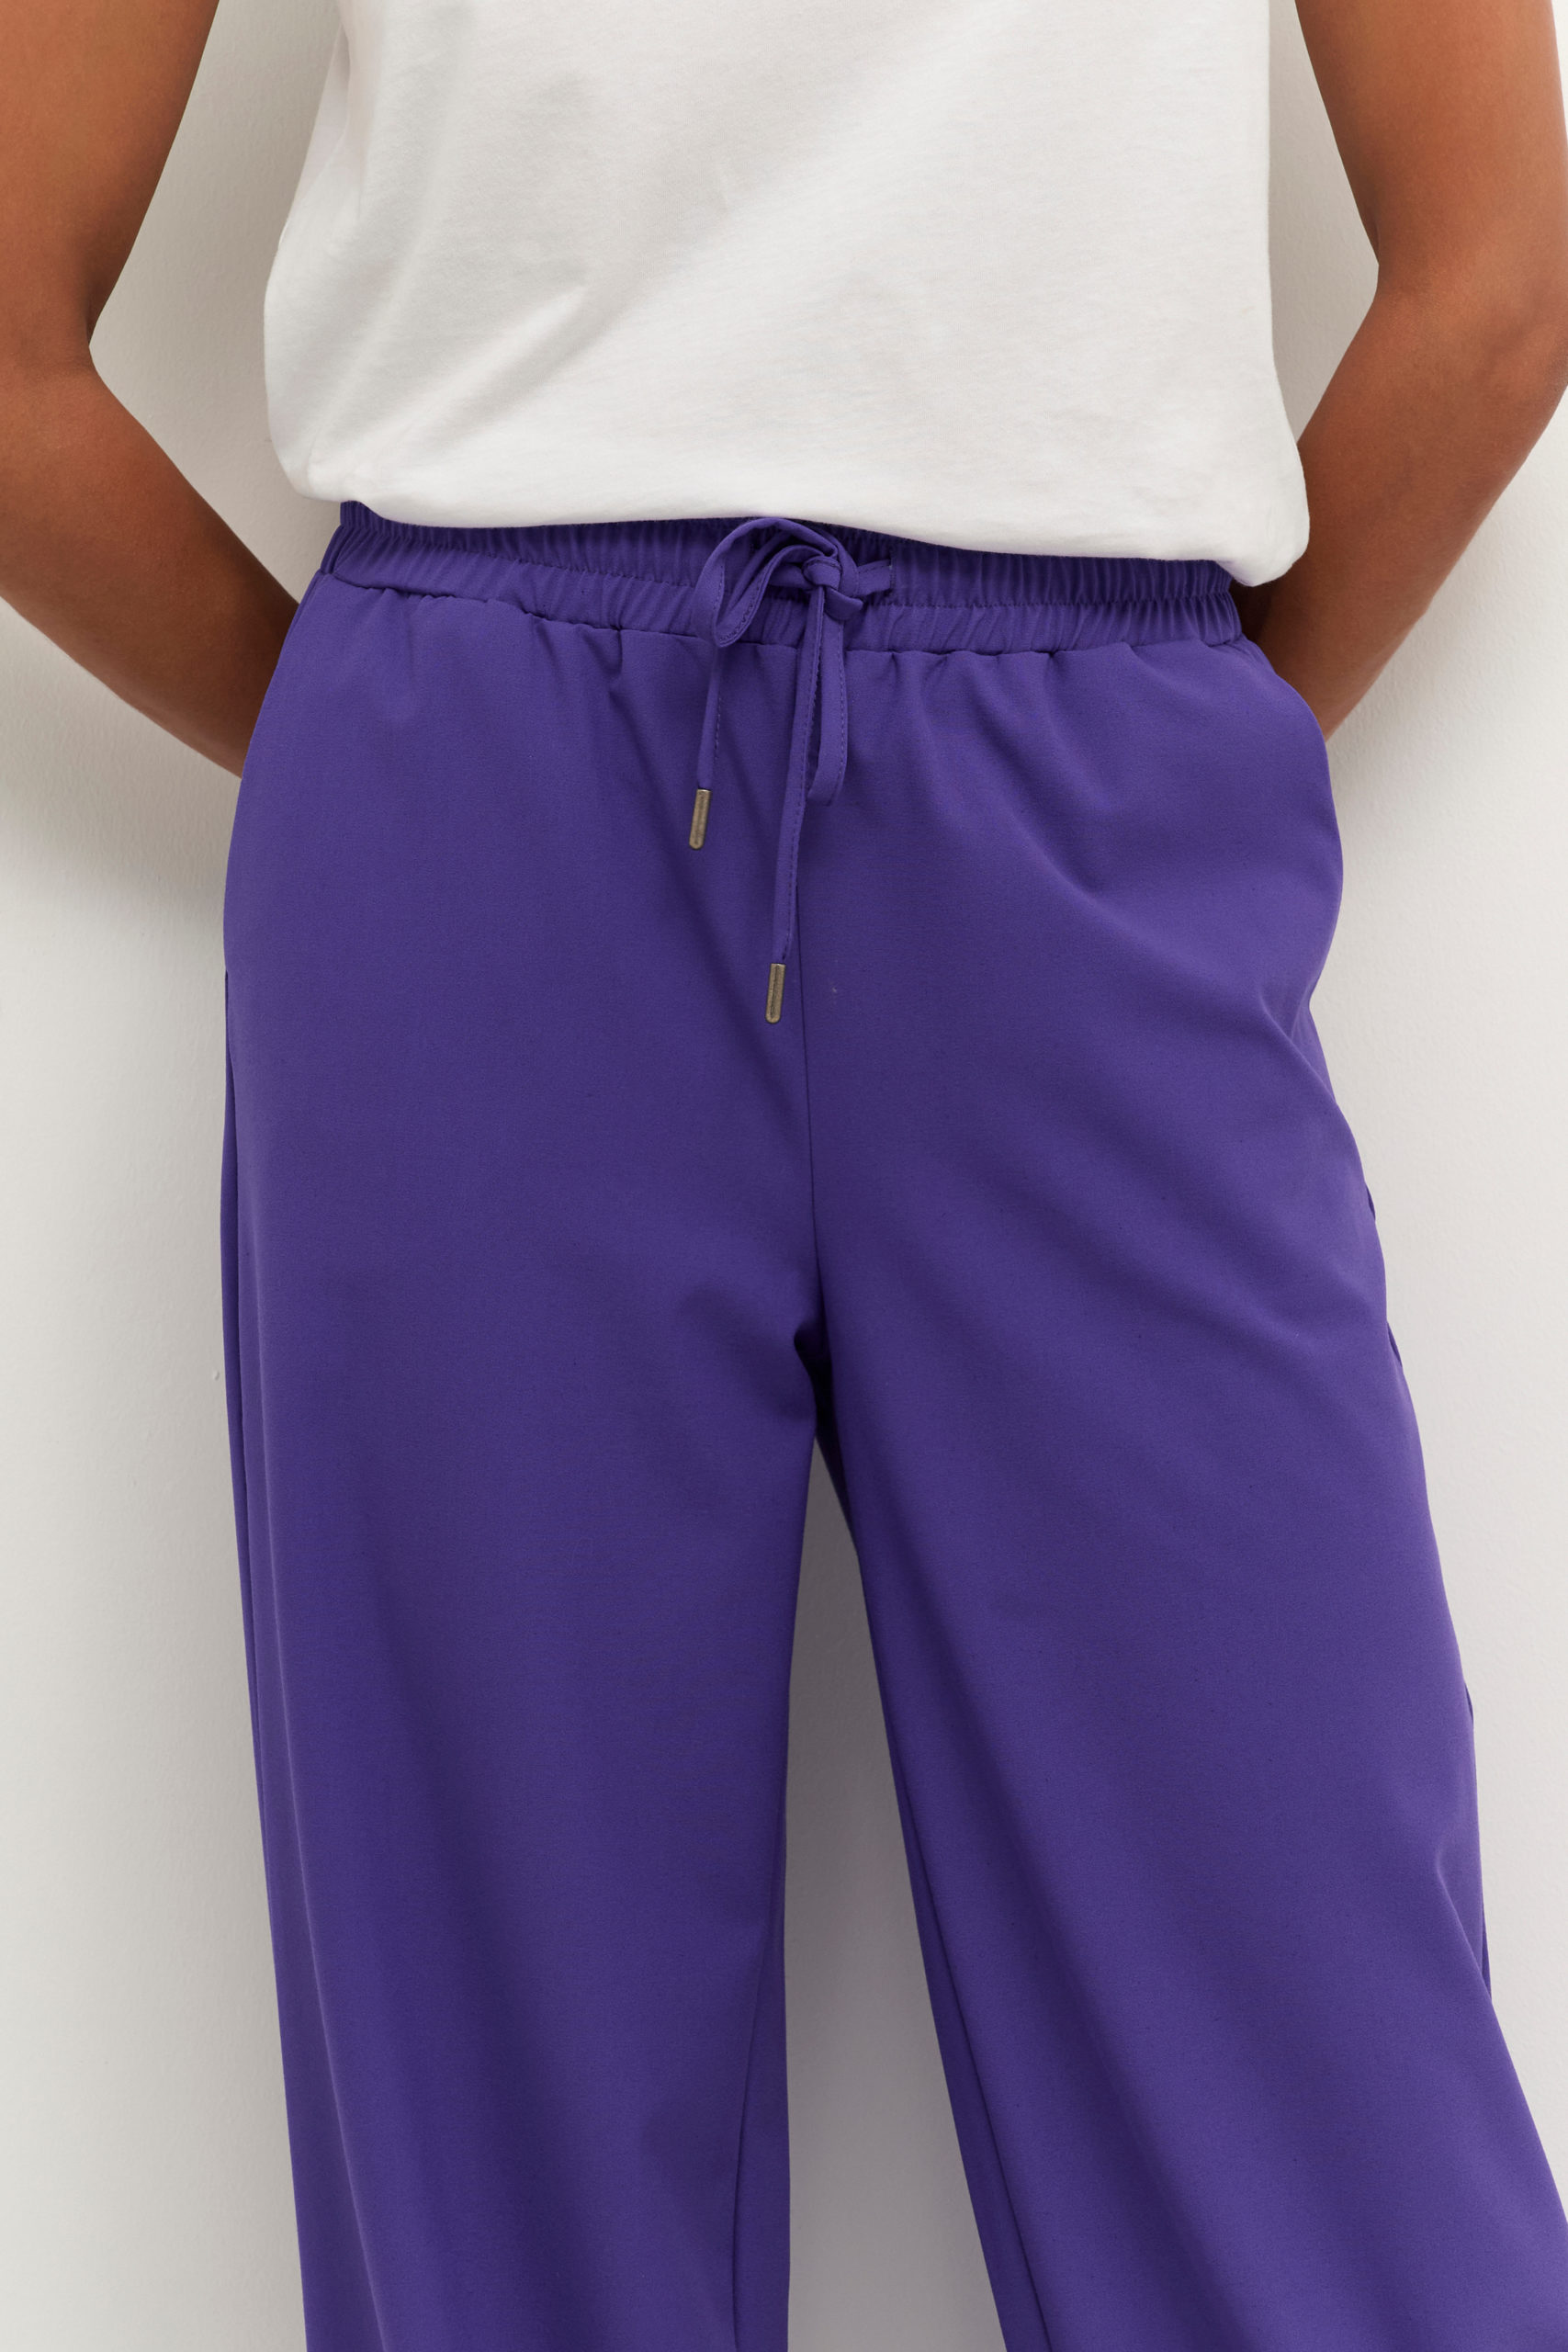 KAcolette Pants Suiting purple closeup